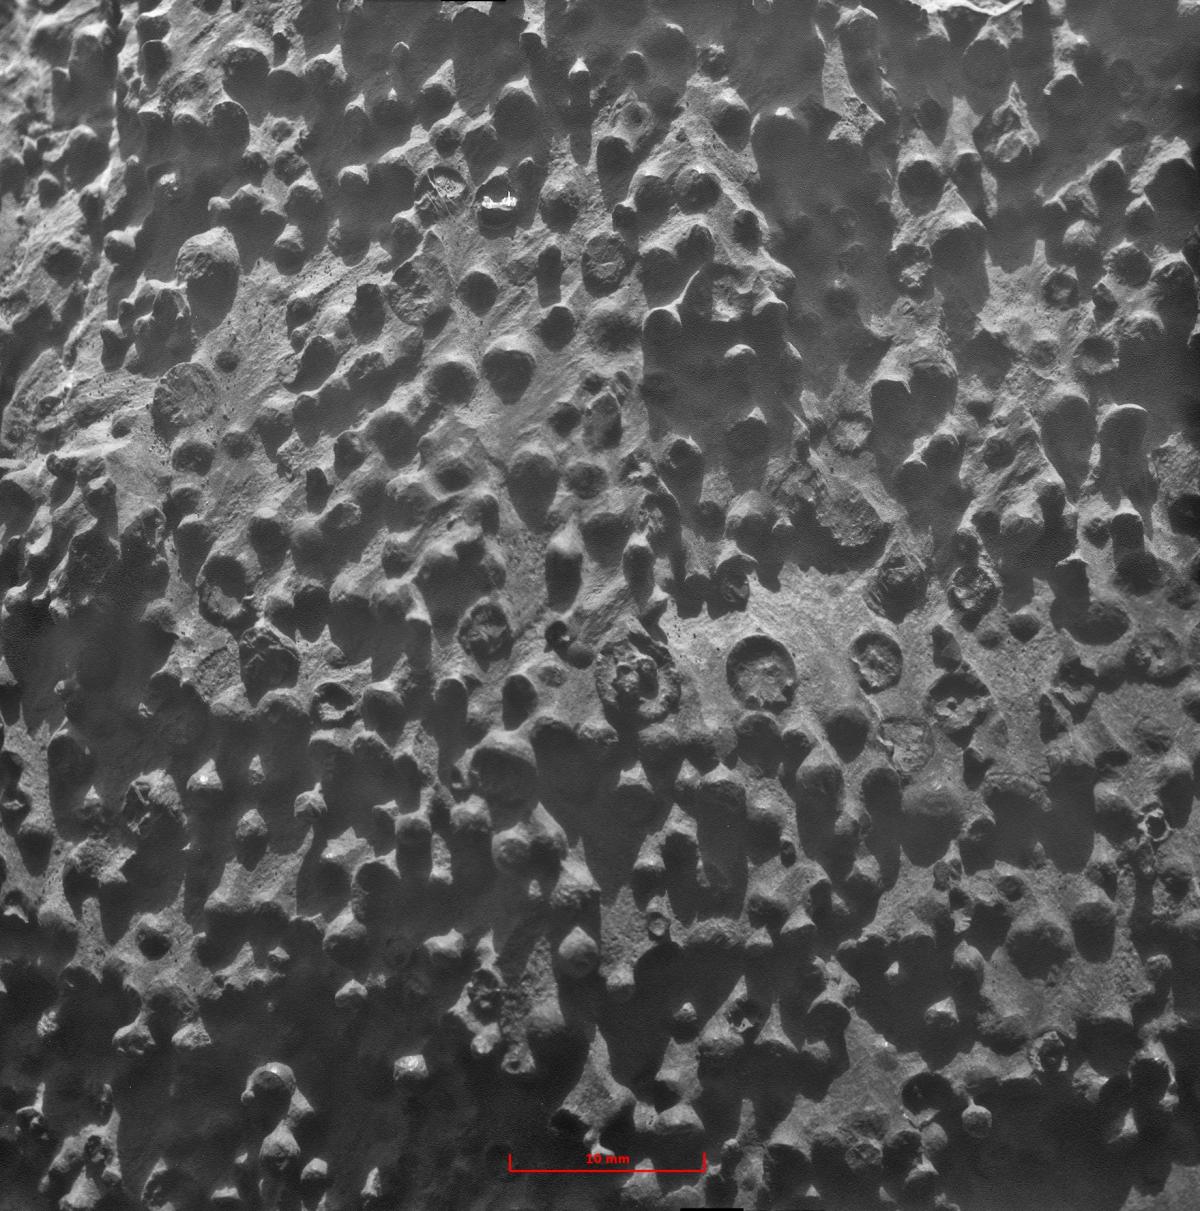 Mars - Opportunity Mystery Spheres.jpg